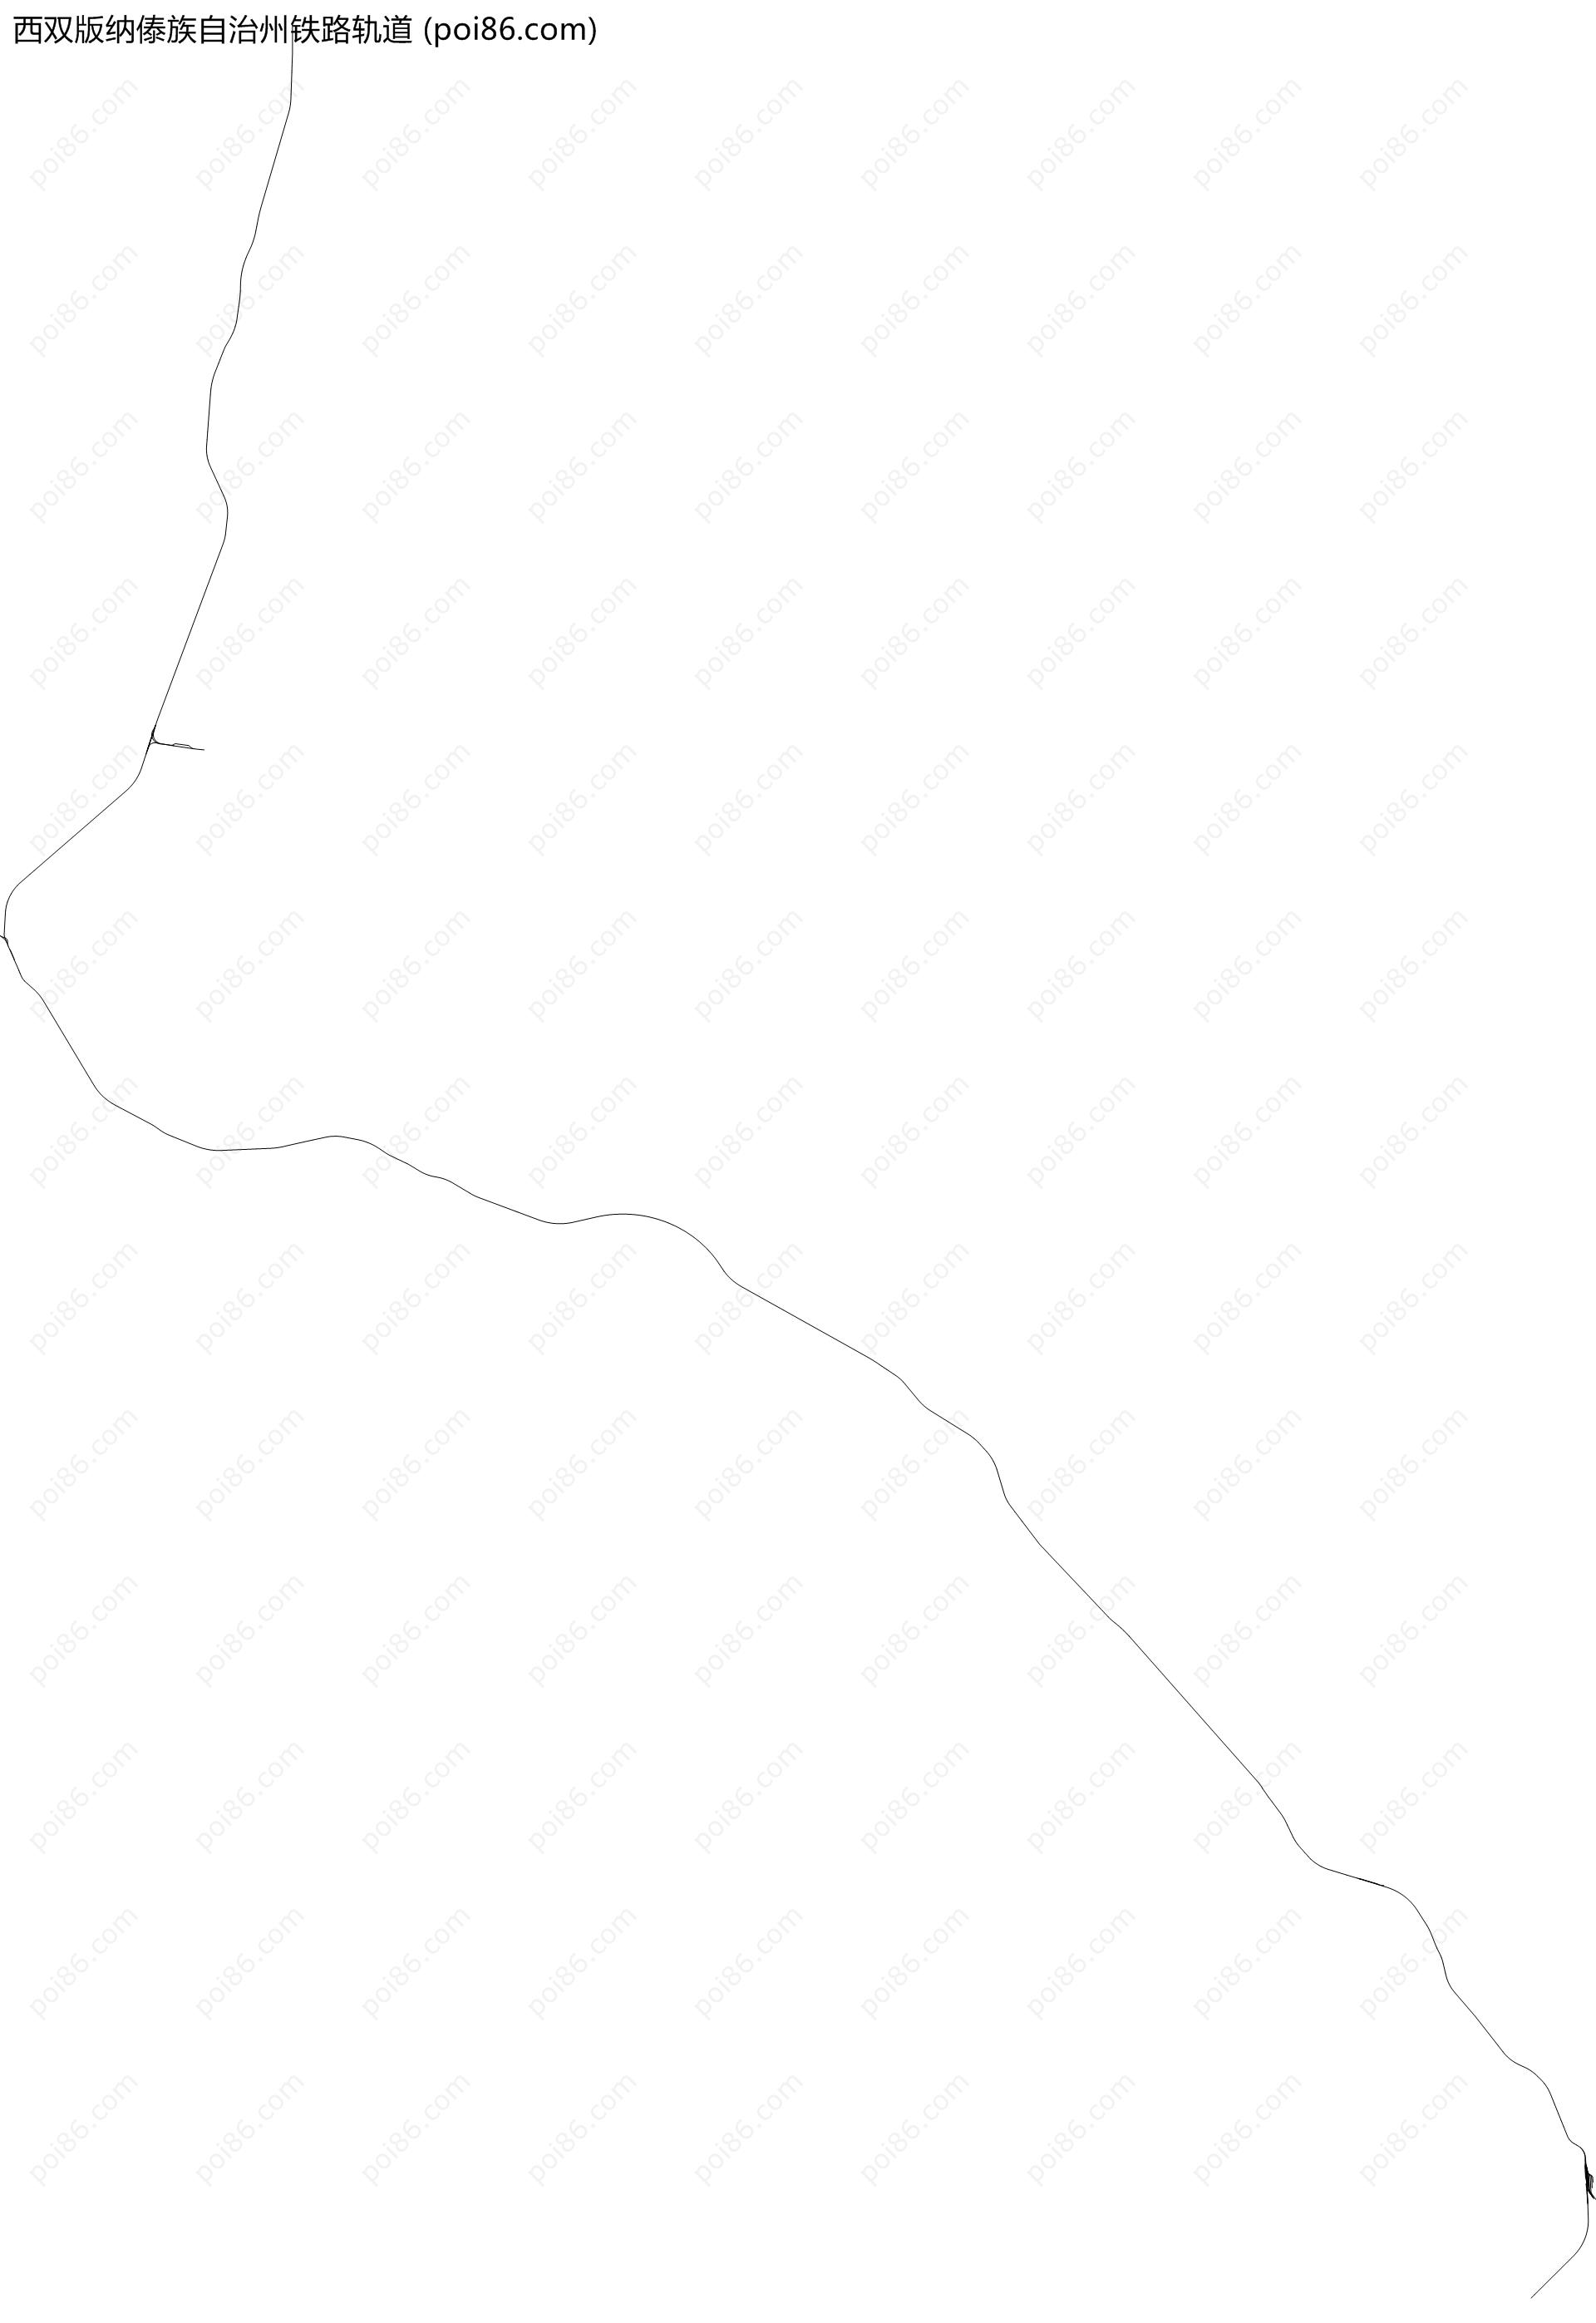 西双版纳傣族自治州铁路轨道地图